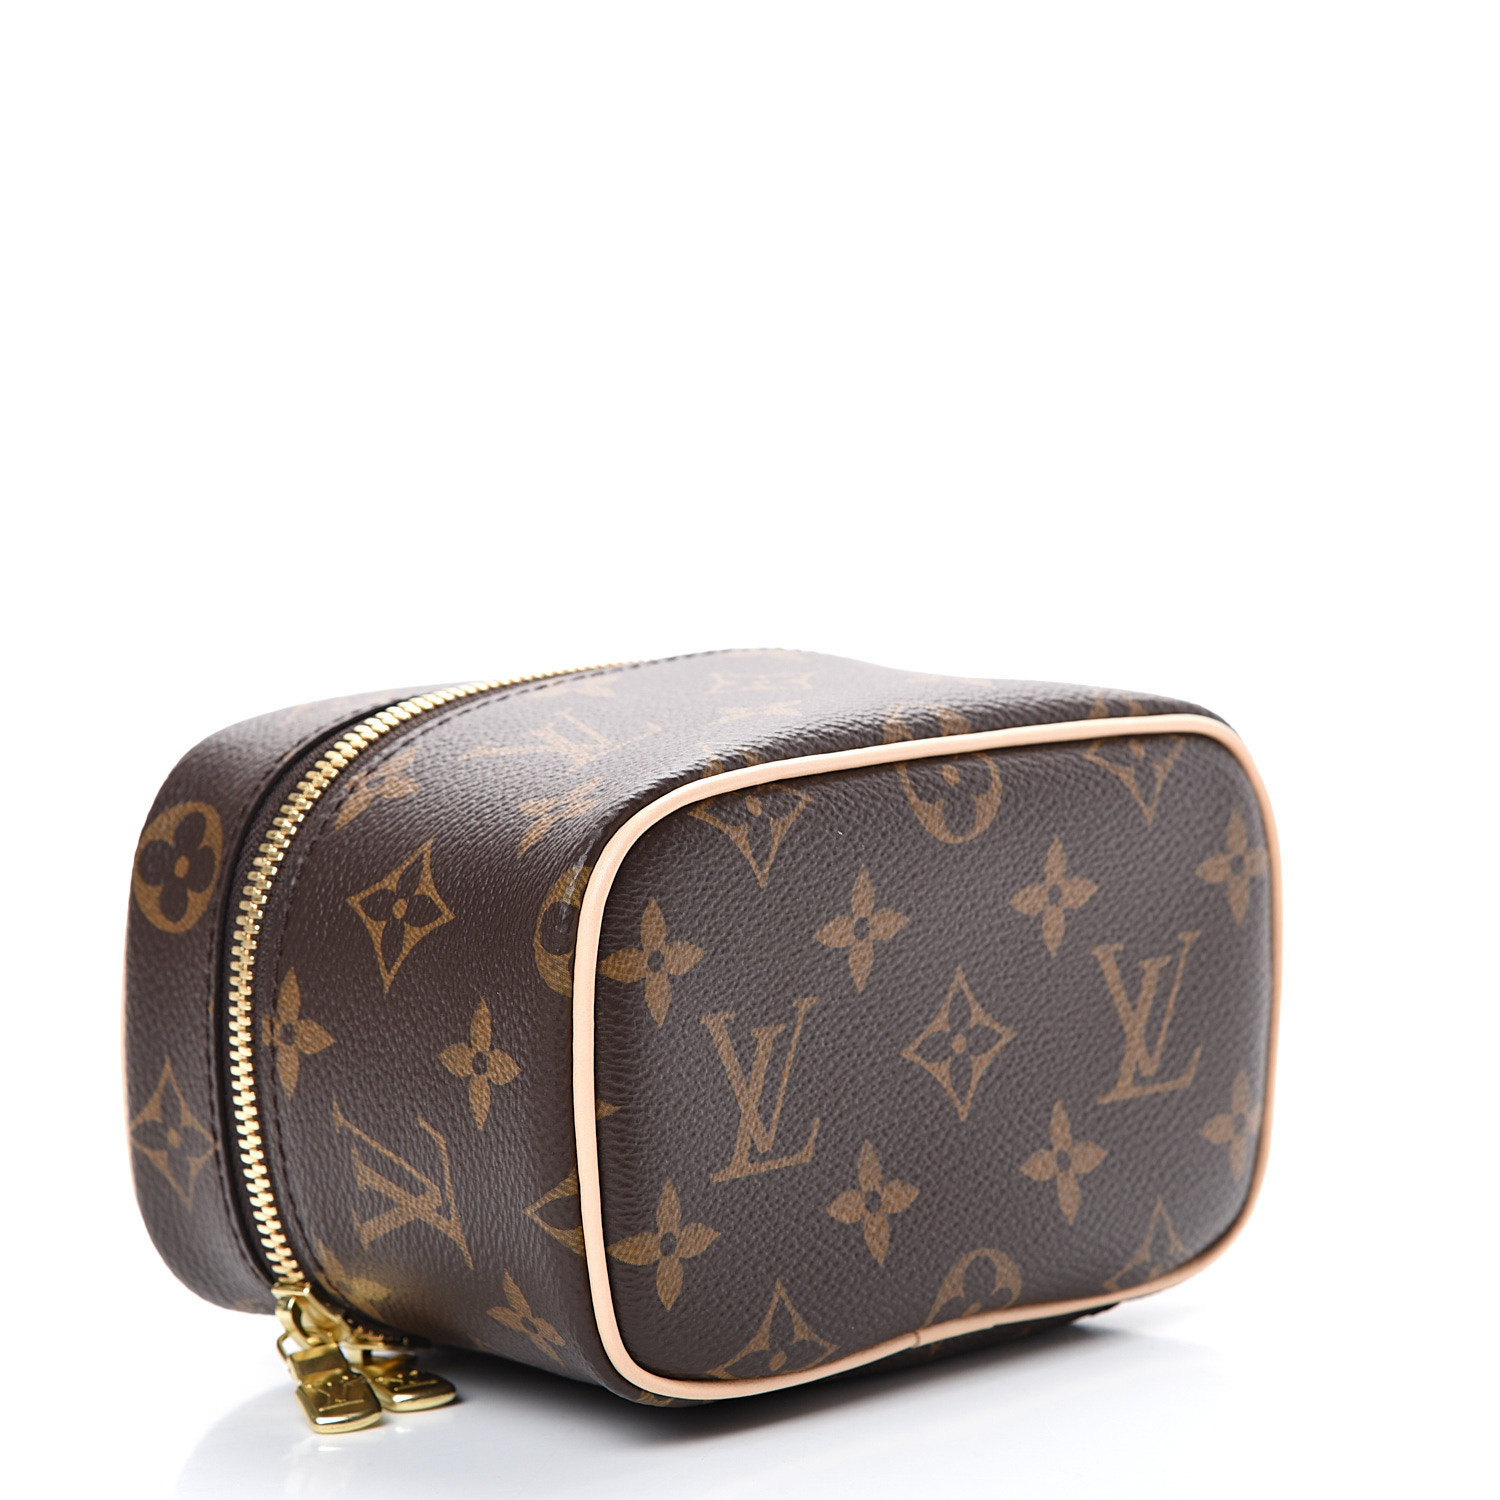 Louis Vuitton Papillon Trunk Bag, Bragmybag